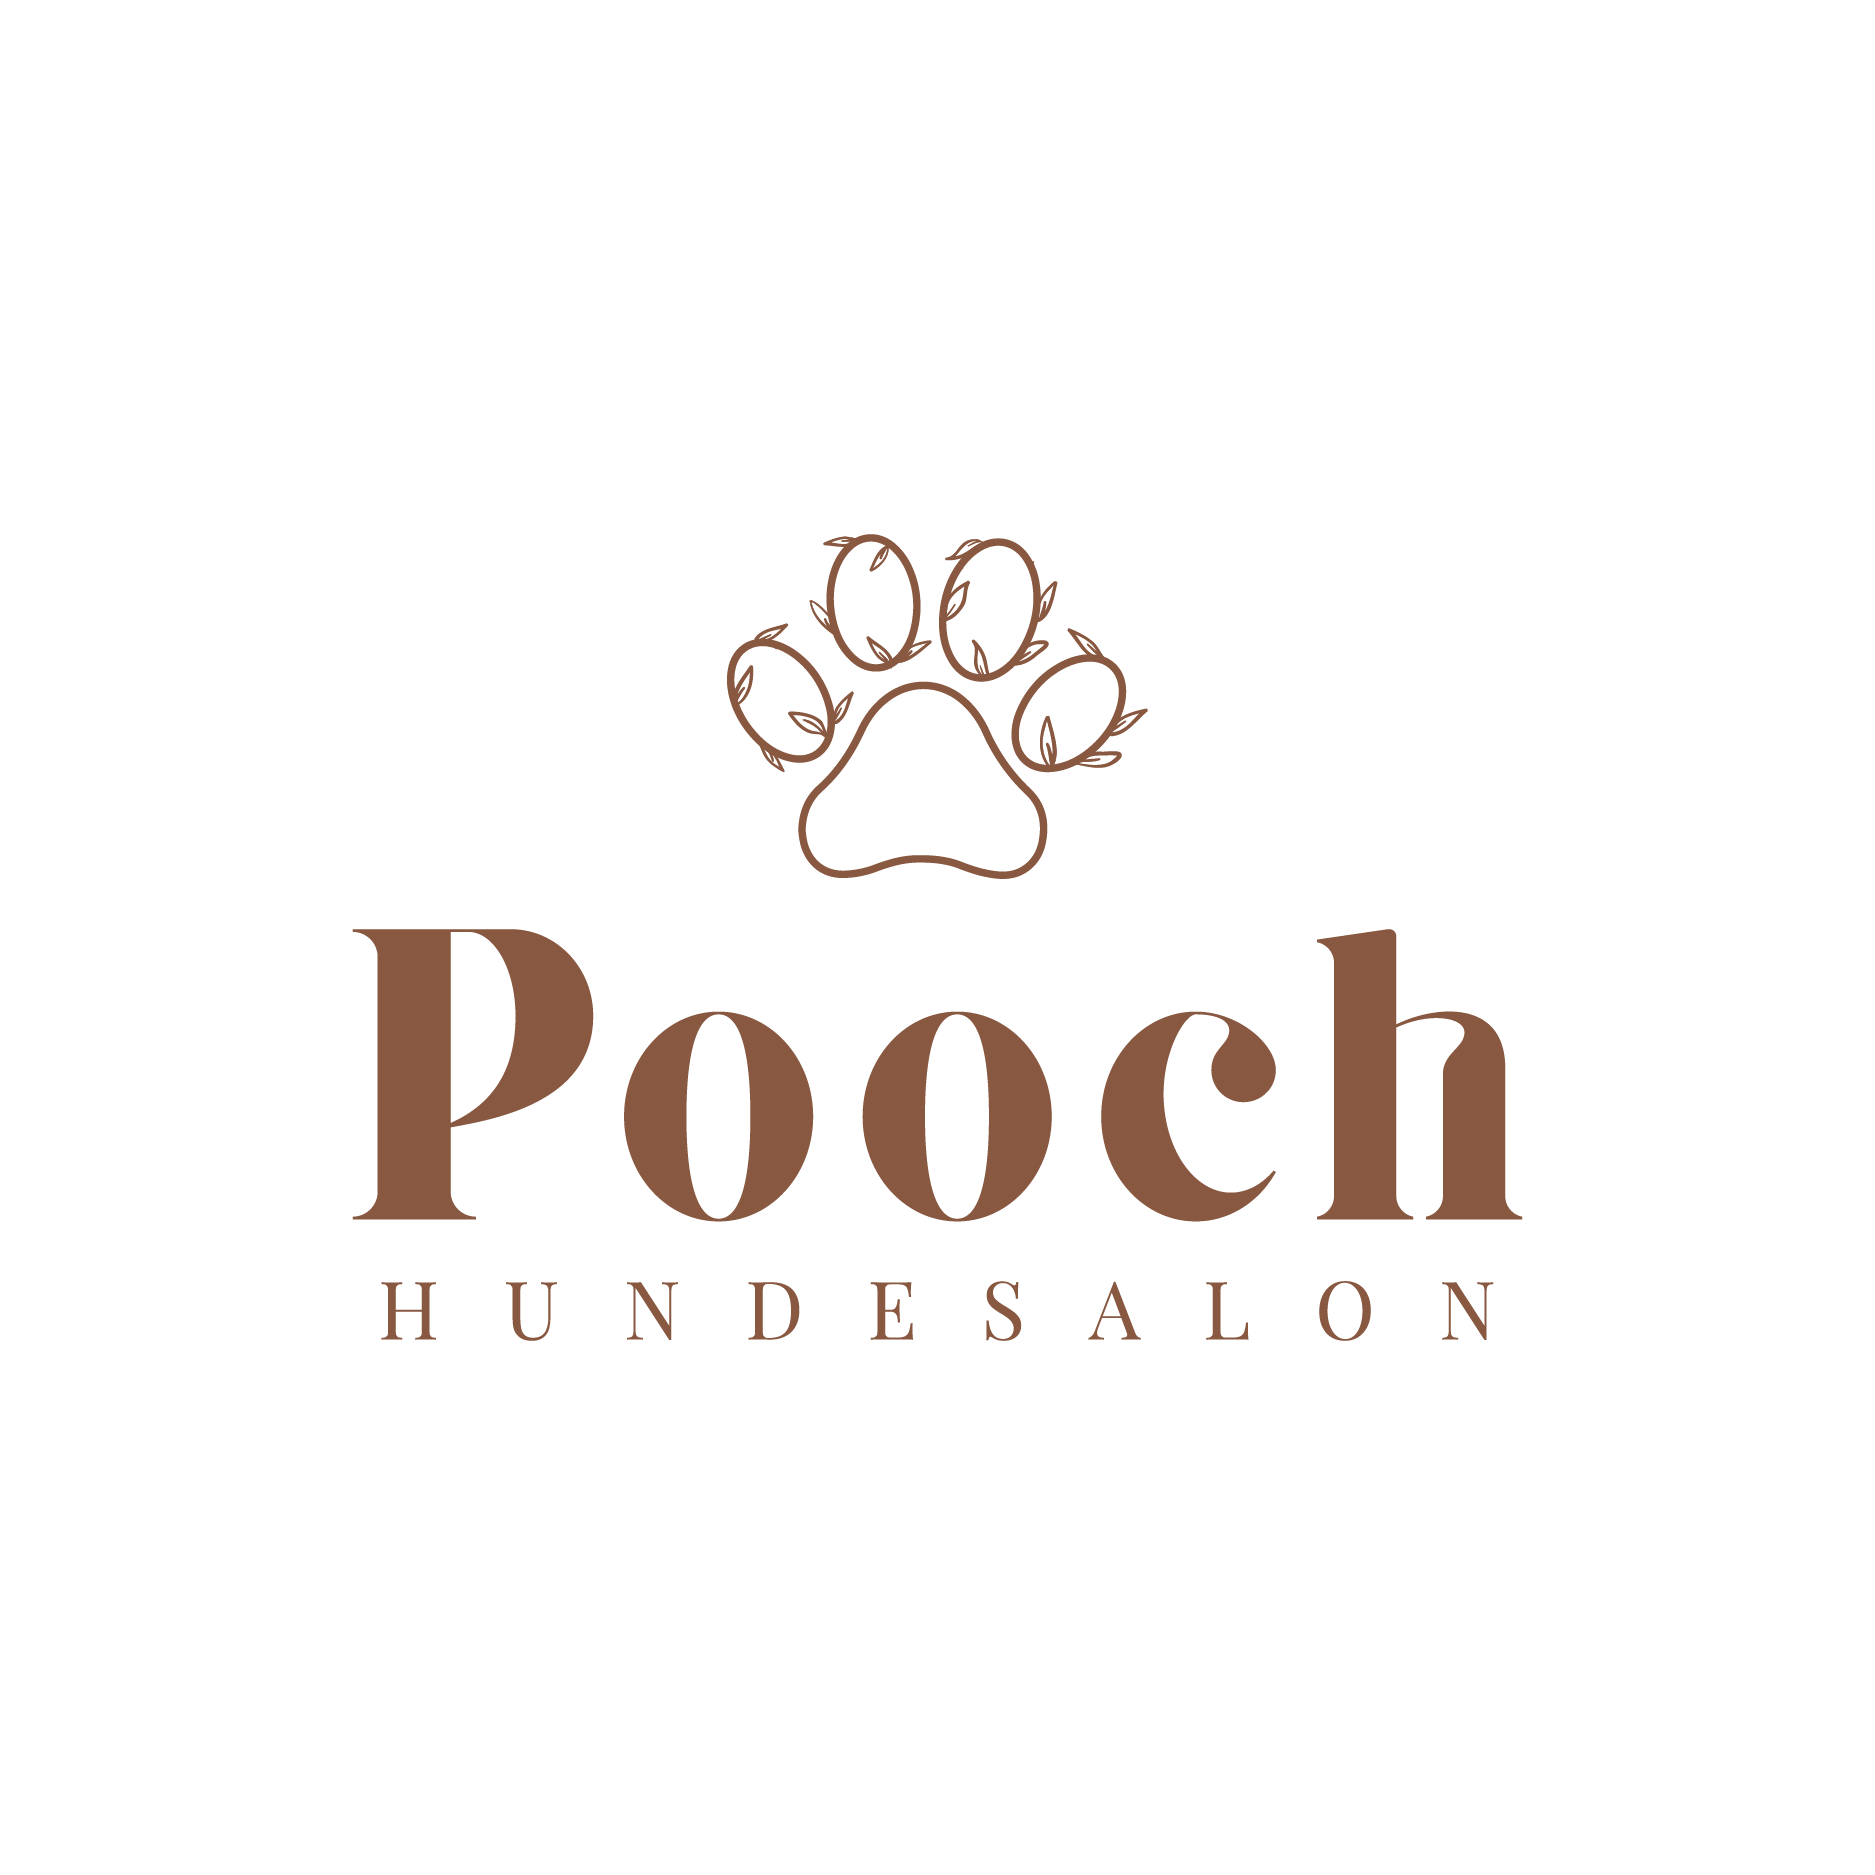 Pooch